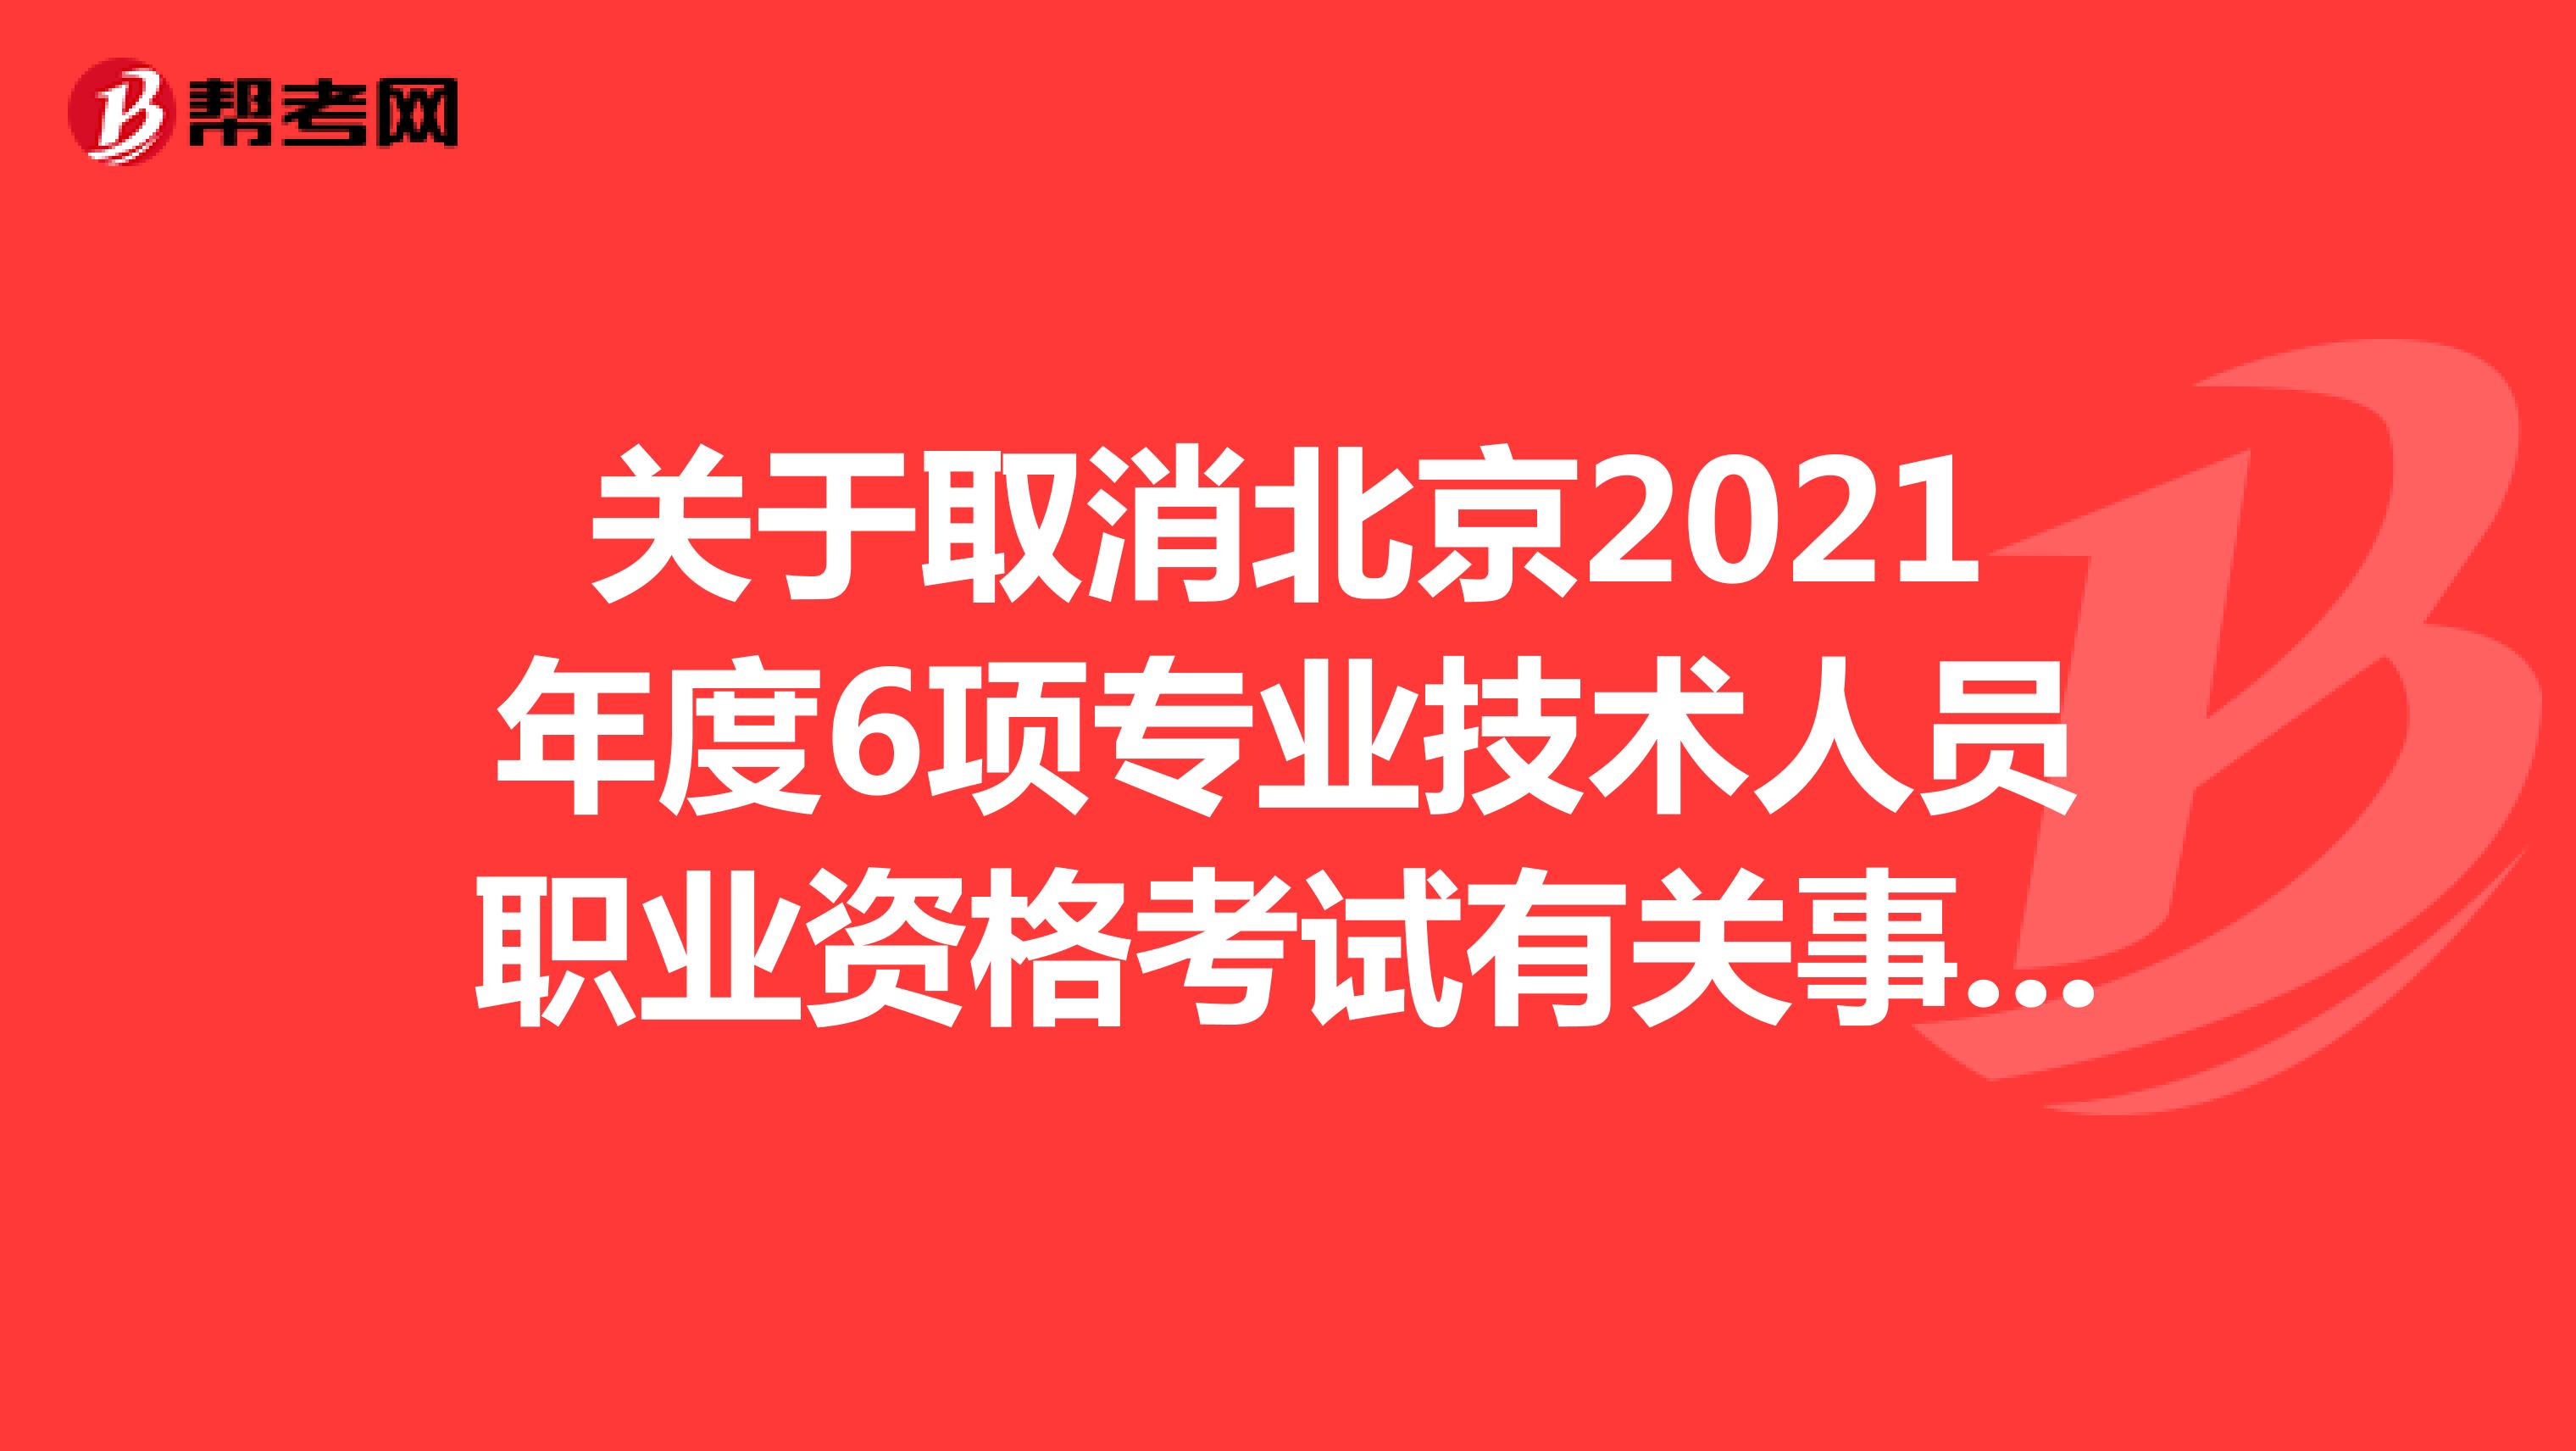 关于取消北京2021年度6项专业技术人员职业资格考试有关事项的解答